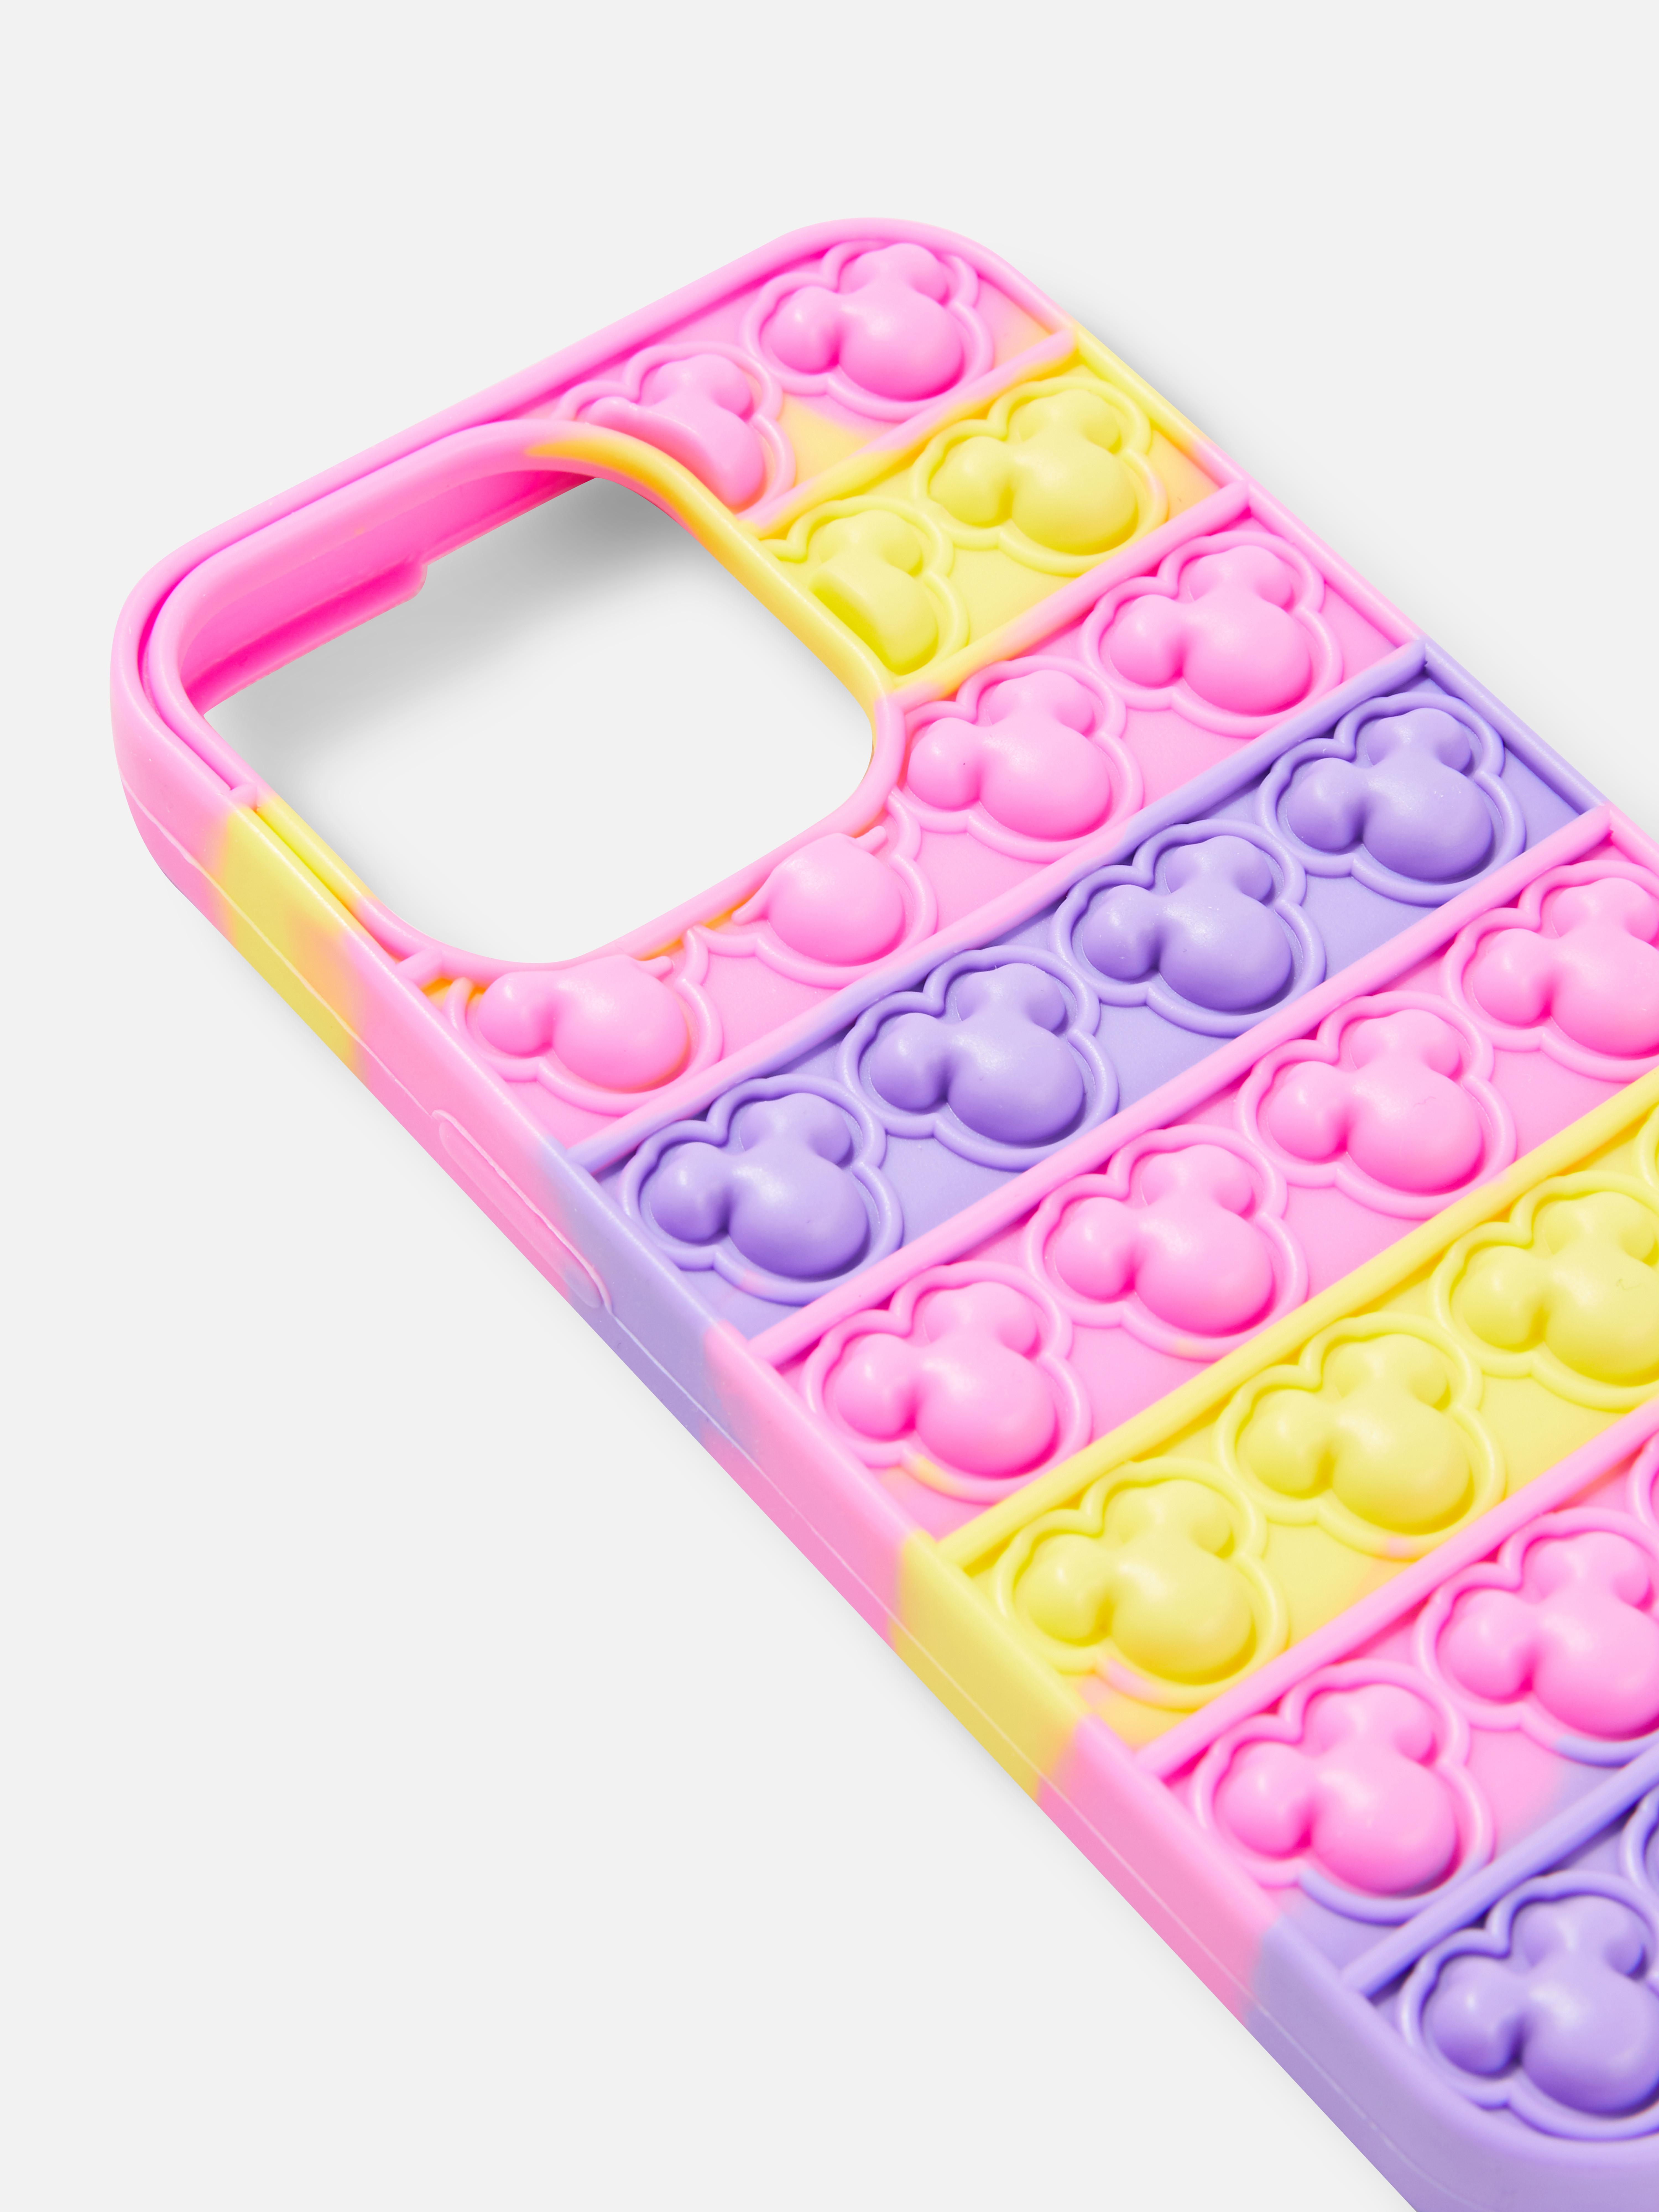 Disney’s Minnie Mouse Bubble Pop Phone Case